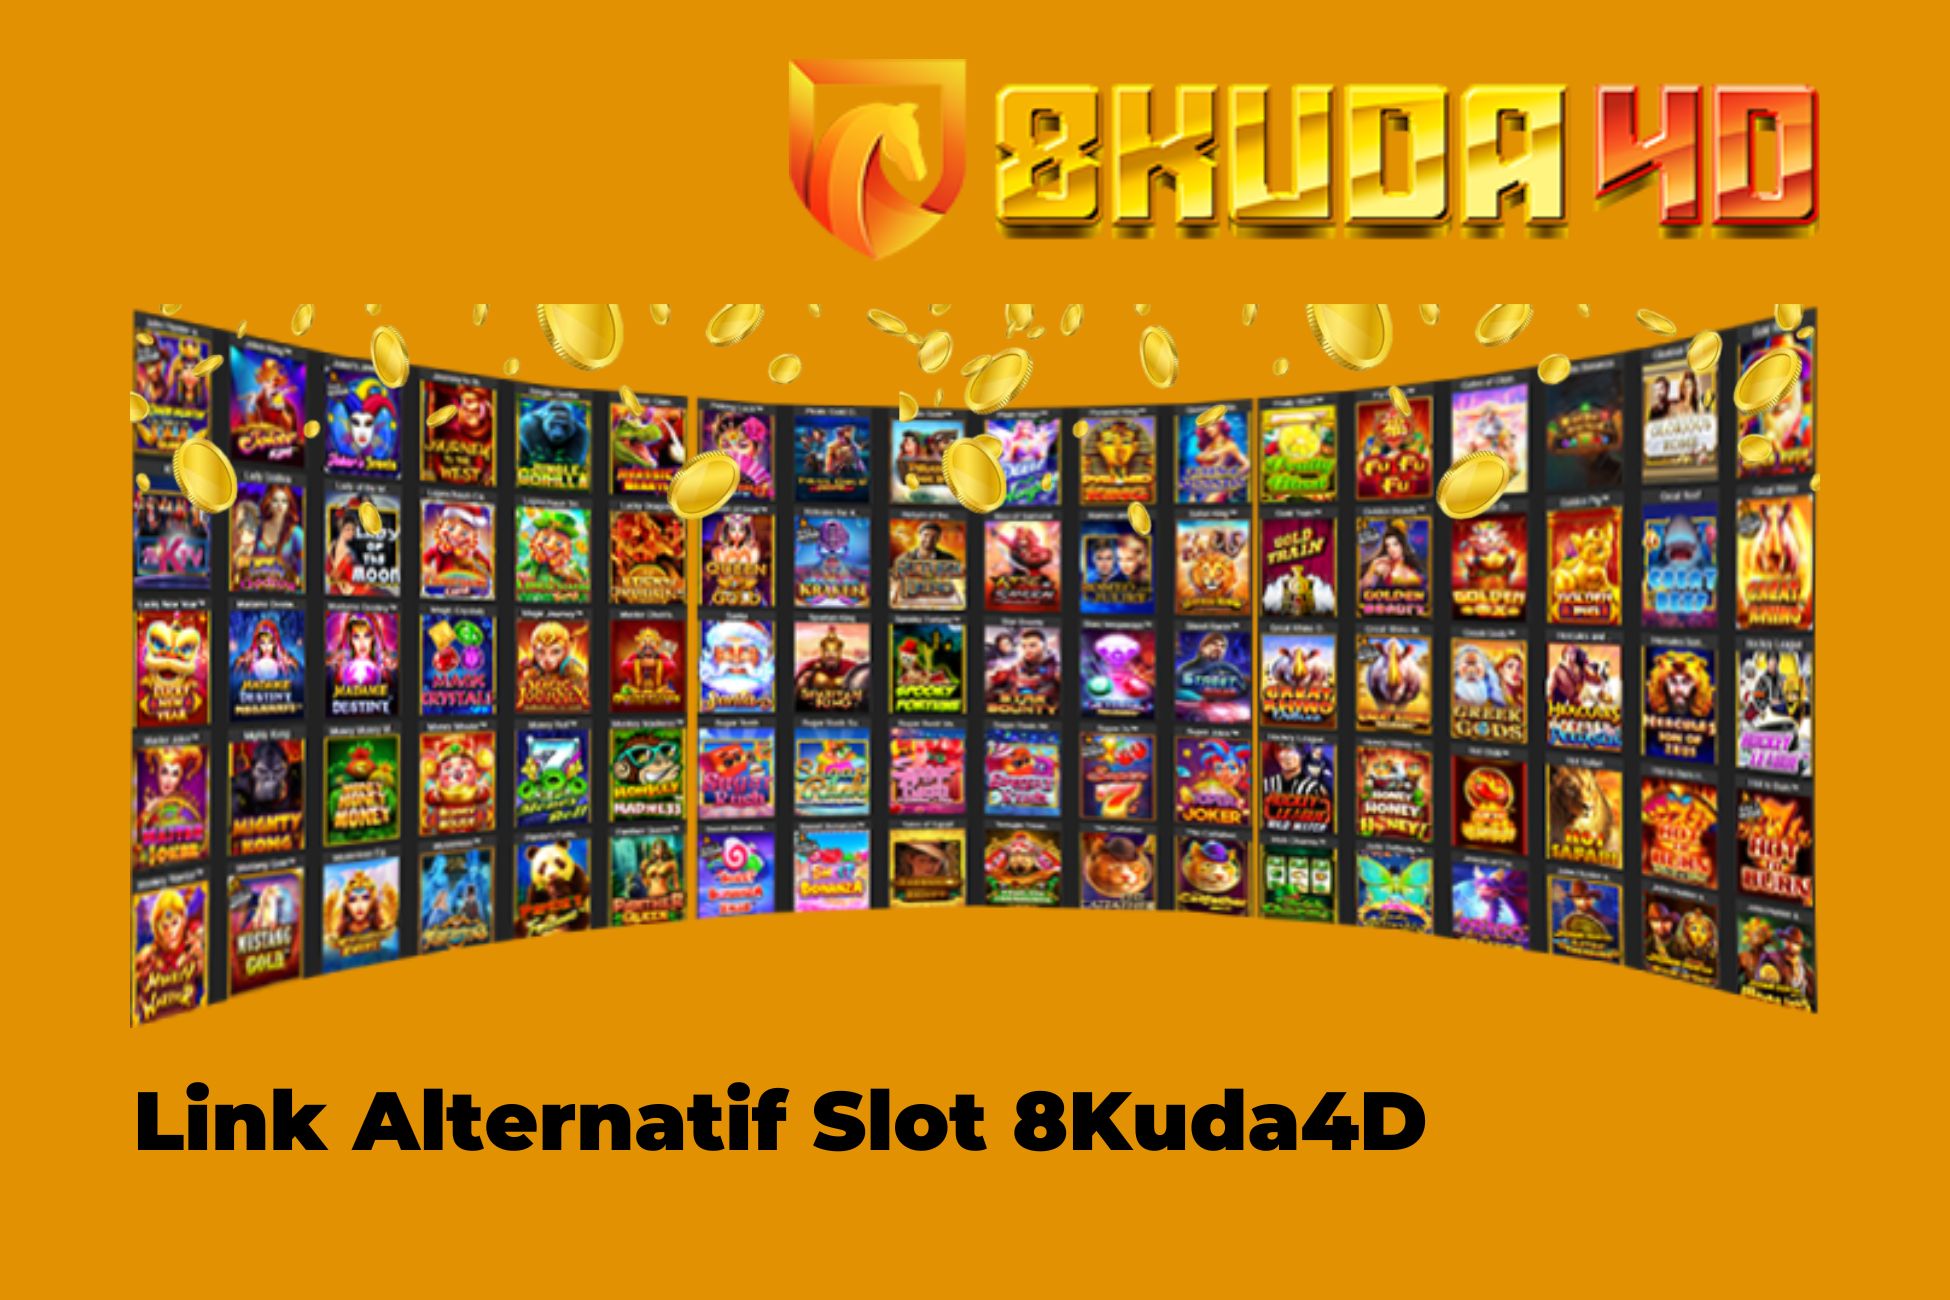 Link Alternatif Slot 8Kuda4D